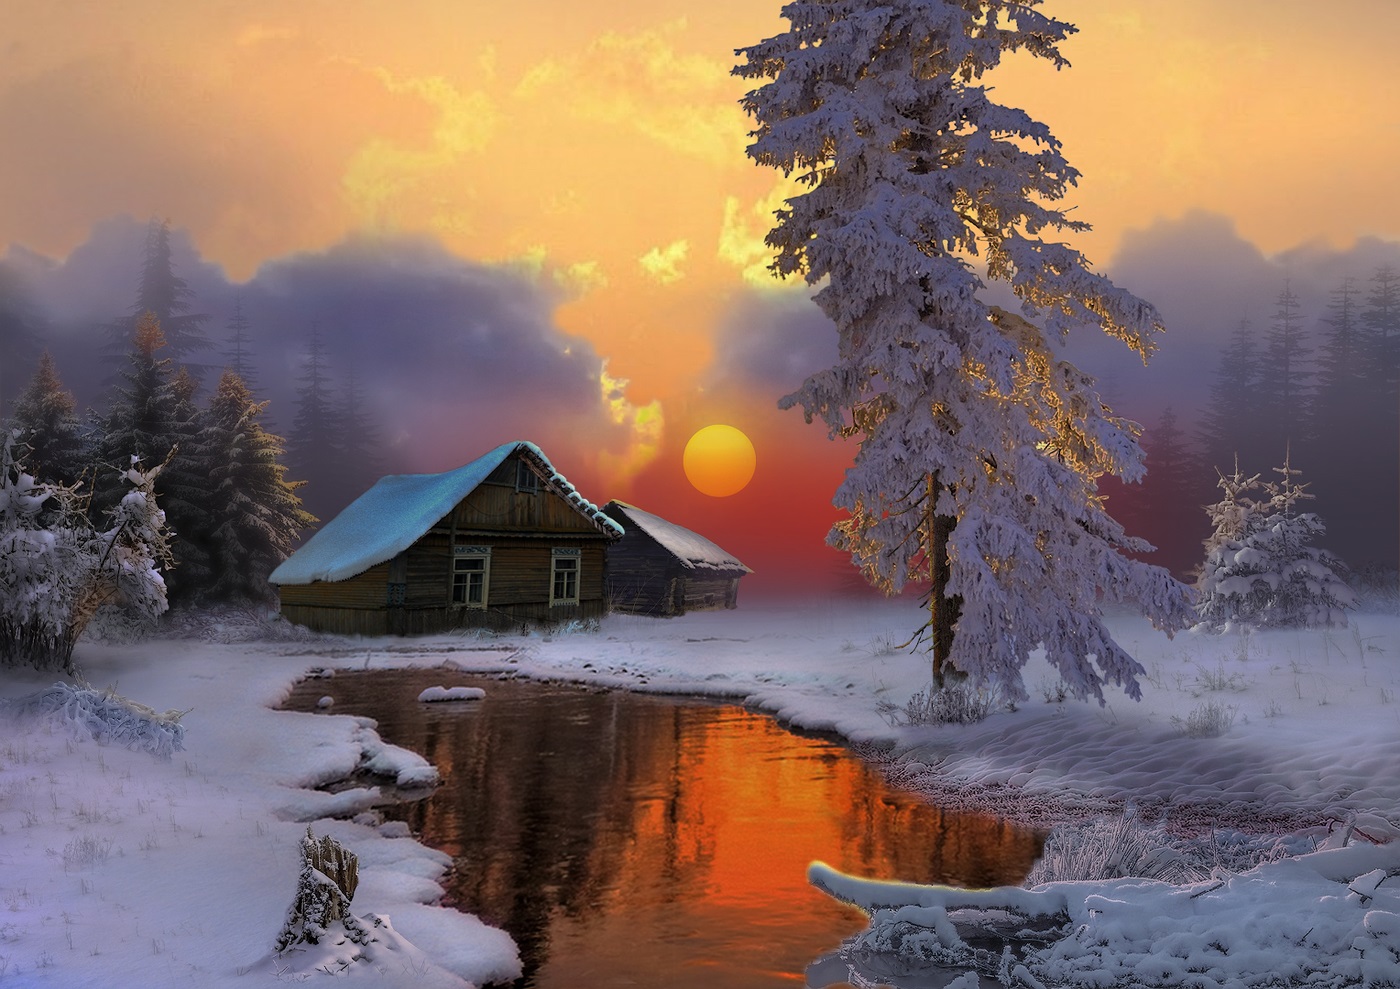 ლამაზი sunset ფოტო ზამთარში